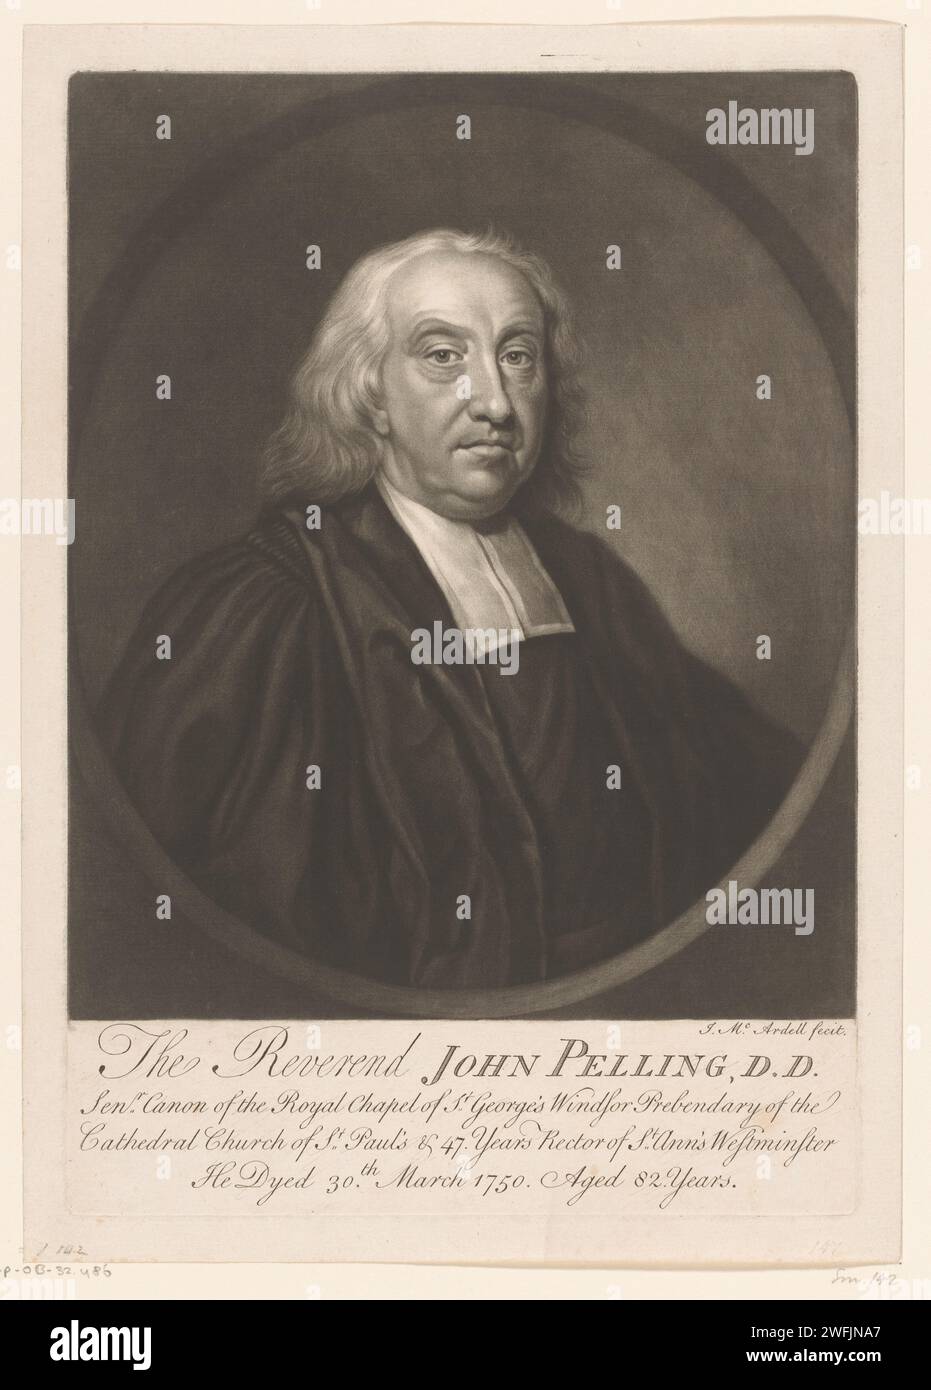 Ritratto di John Pelling, James Mcardell, 1750 - 1765 stampa London paper Historical Persons. Funzionari e dignitari (con NOME)  chiese protestanti Foto Stock